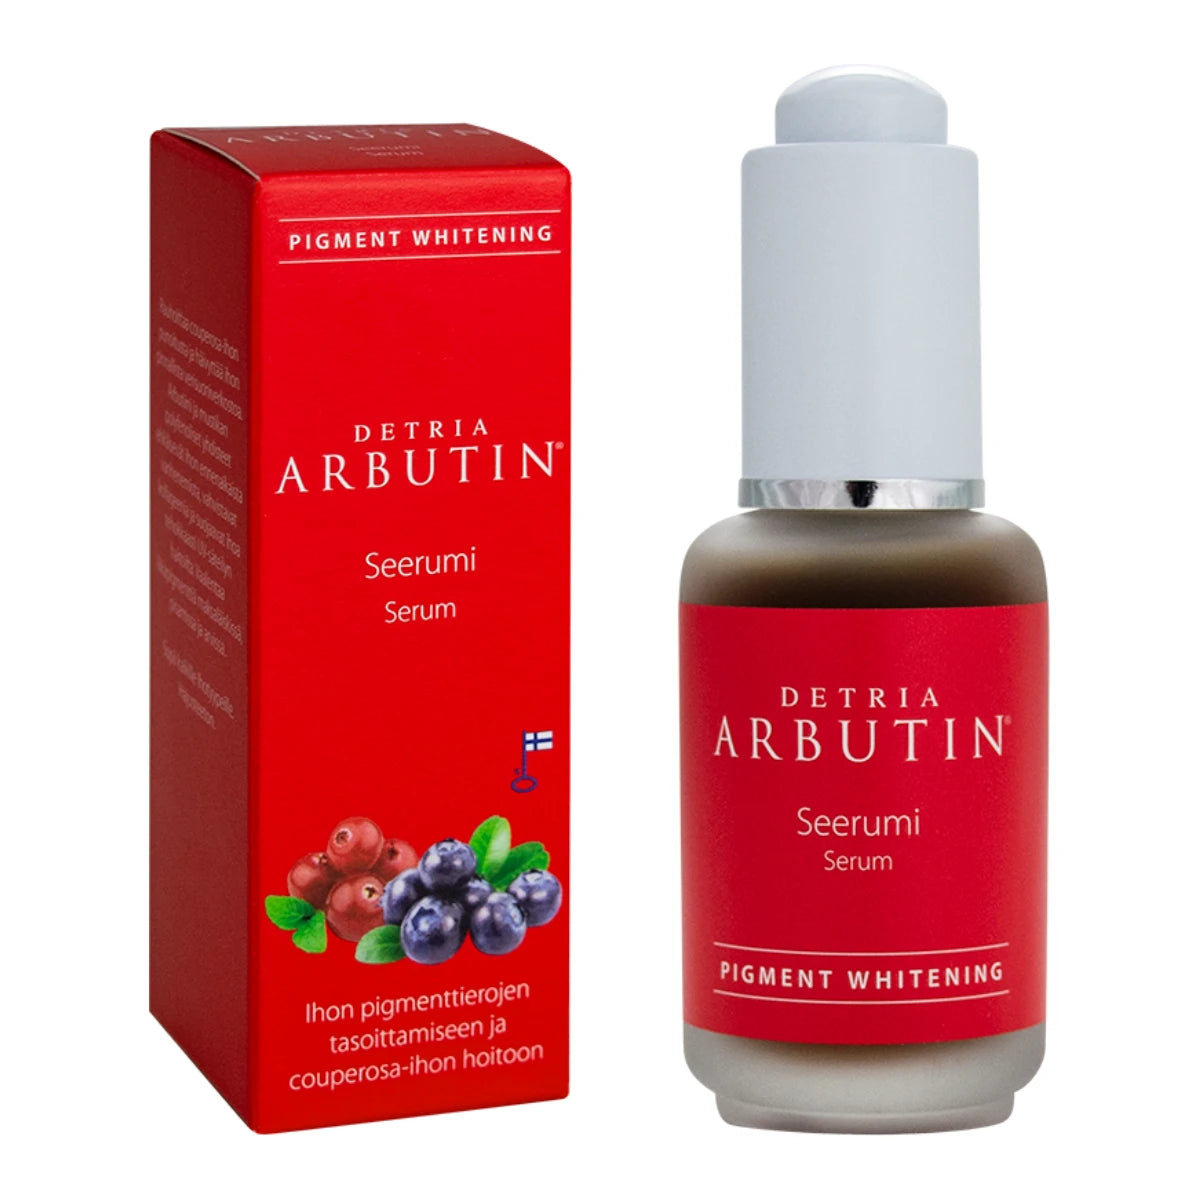 DETRIA Arbutin Seerumi 30 ml ihon pigmenttierojen tasoittamiseen